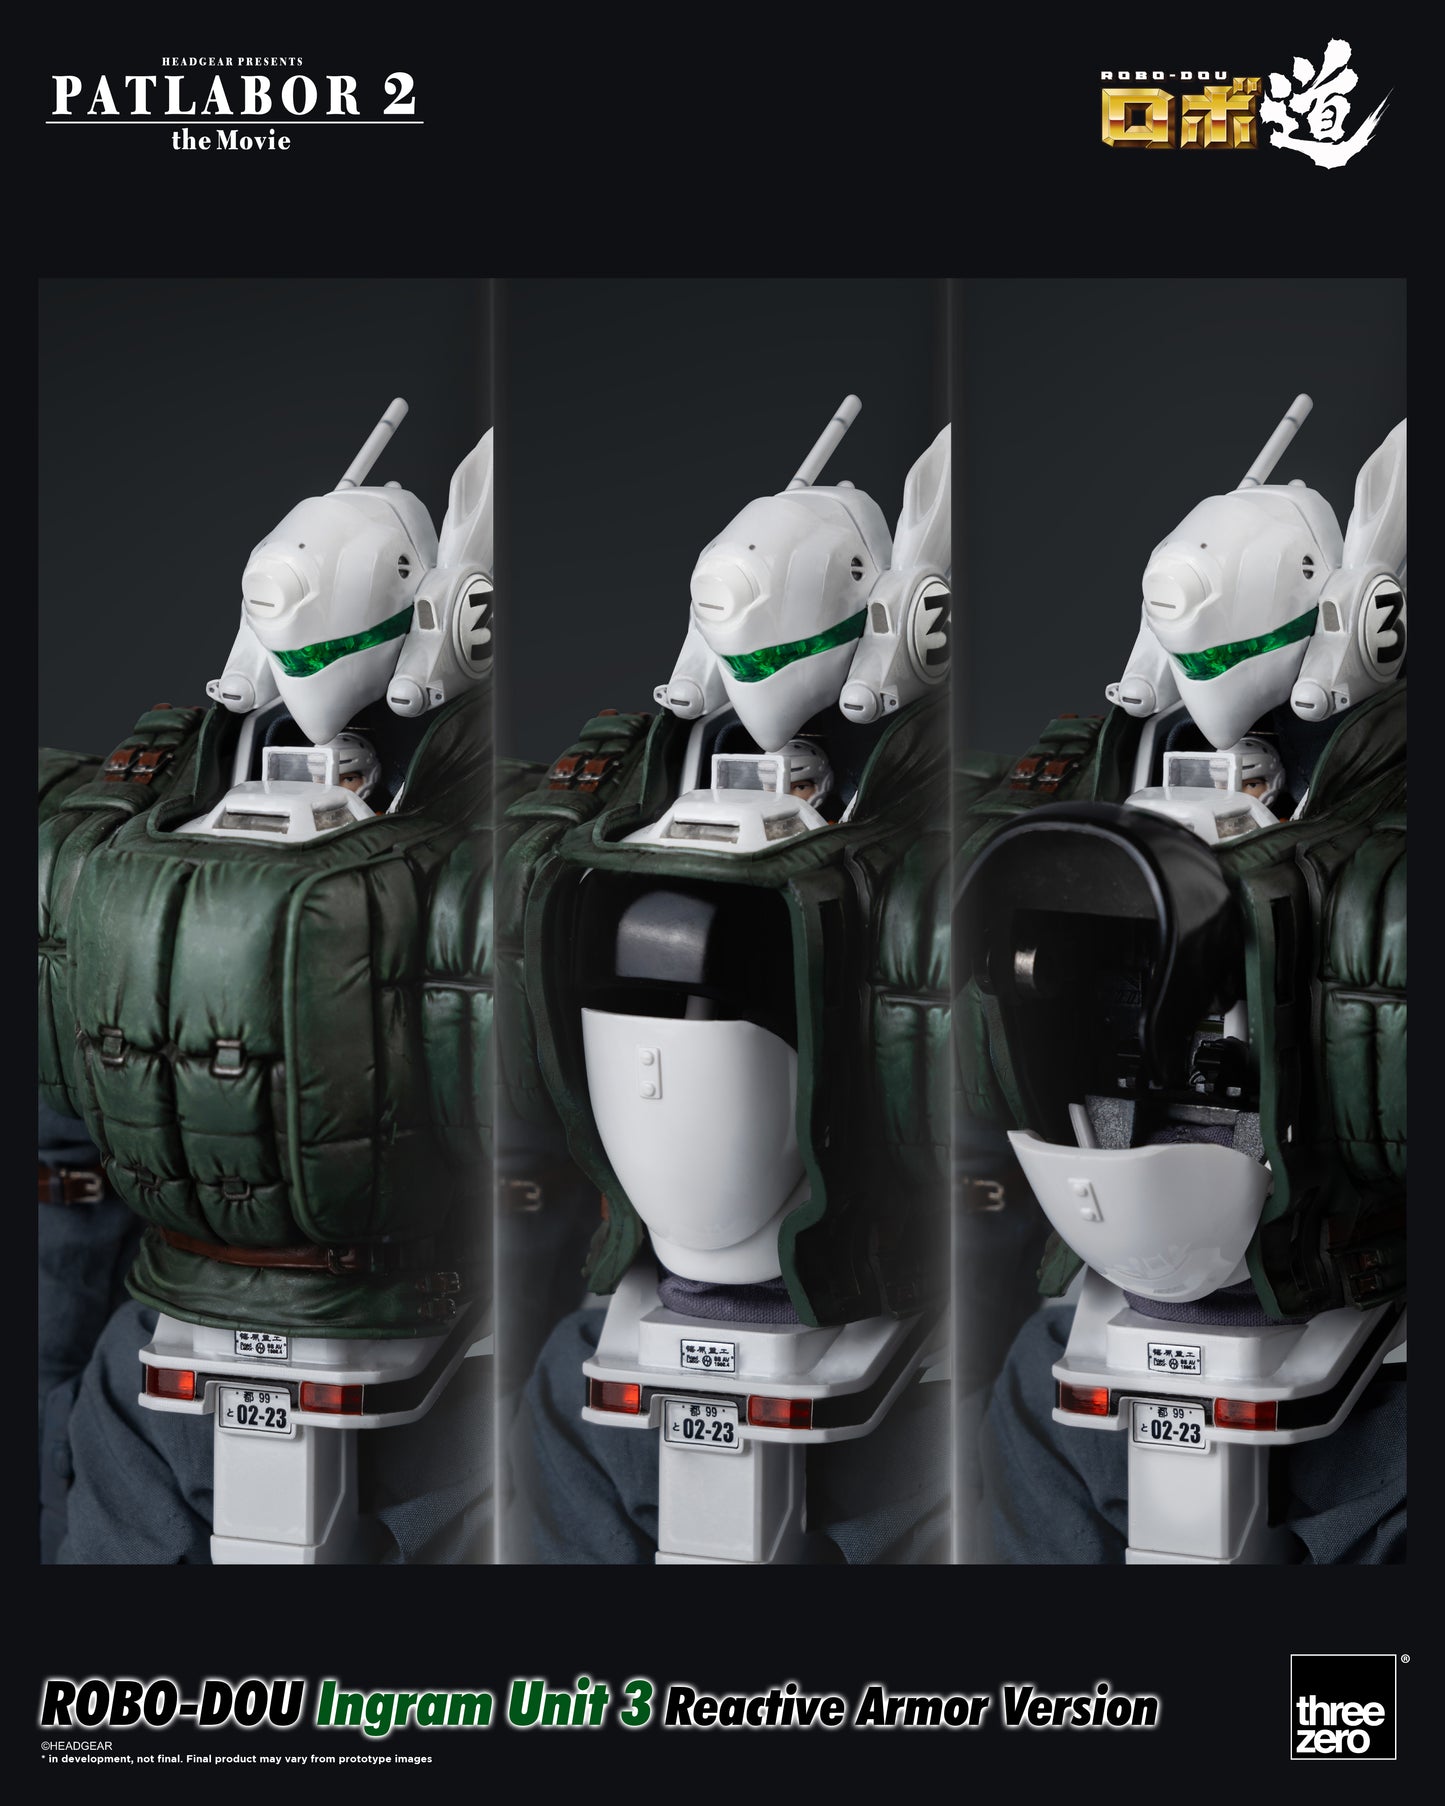 Patlabor 2: The Movie - ROBO-DOU Ingram Unit 3 Reactive Armor Version showing cockpit